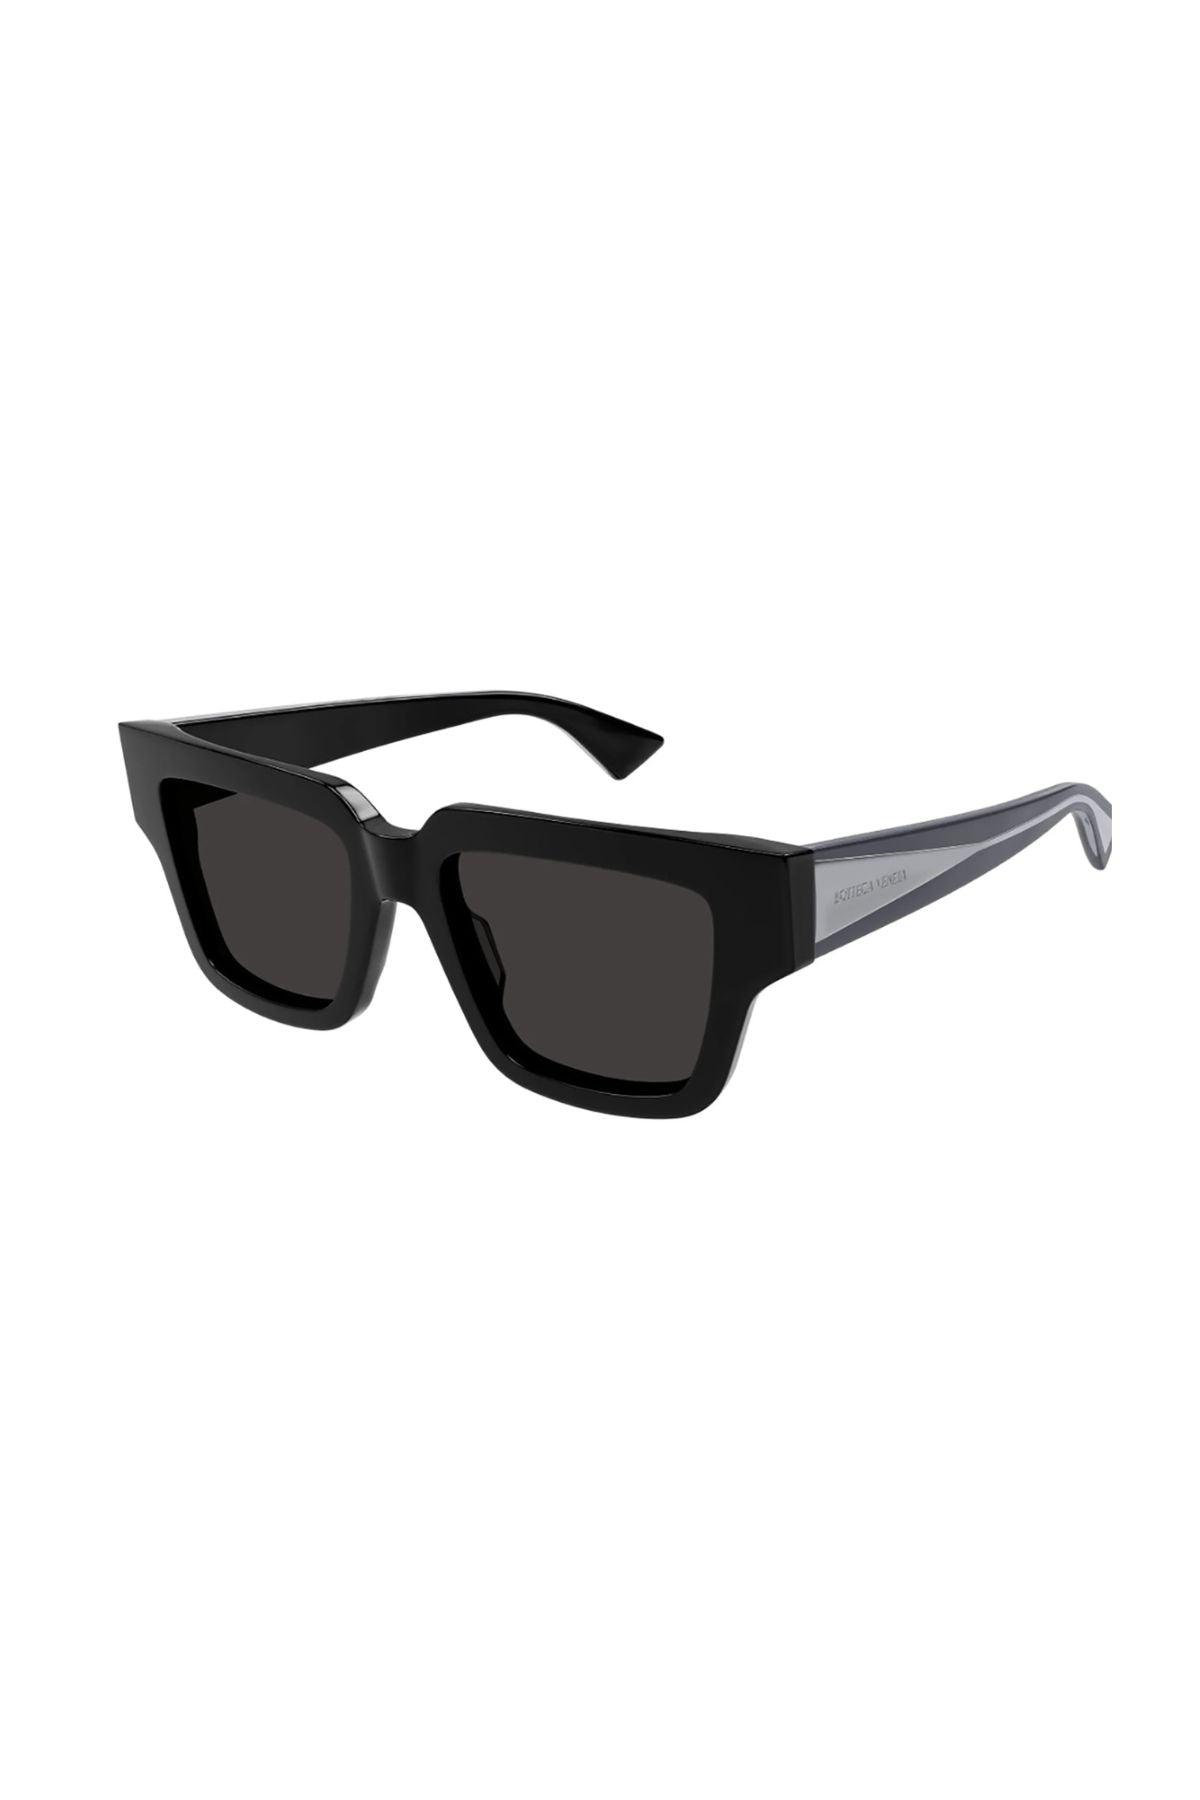 Bottega Veneta Oversized Square Framed Sunglasses - Black